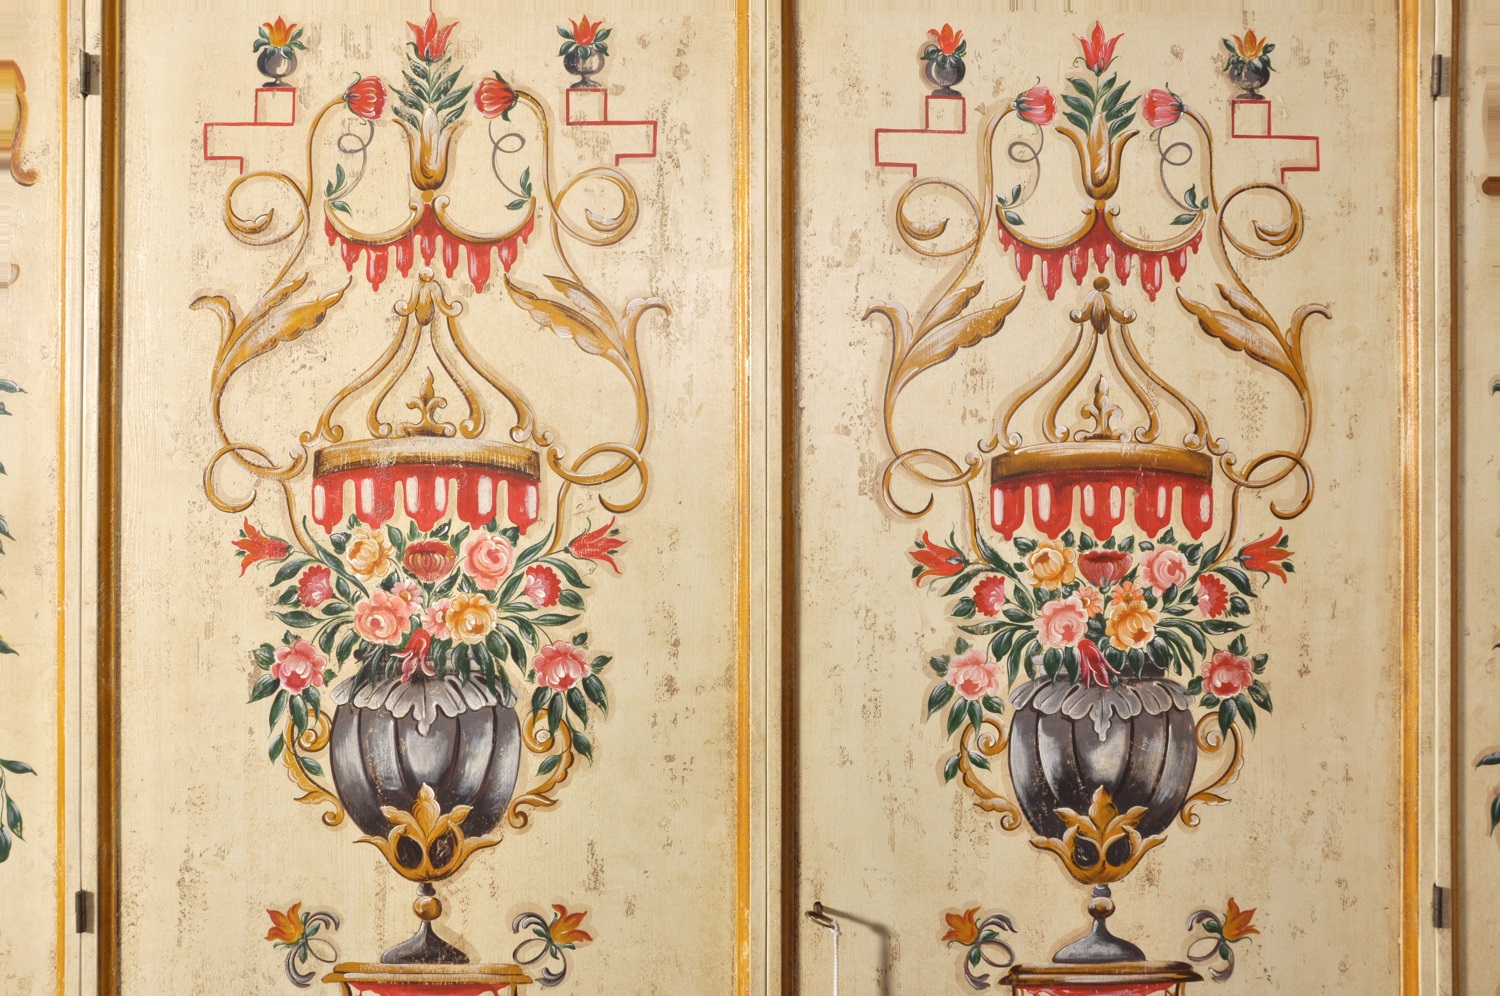 lussuoso armadio in stile veneziano dipinto con fiori e barocchi per ingresso o camera decorato a mano con tempere